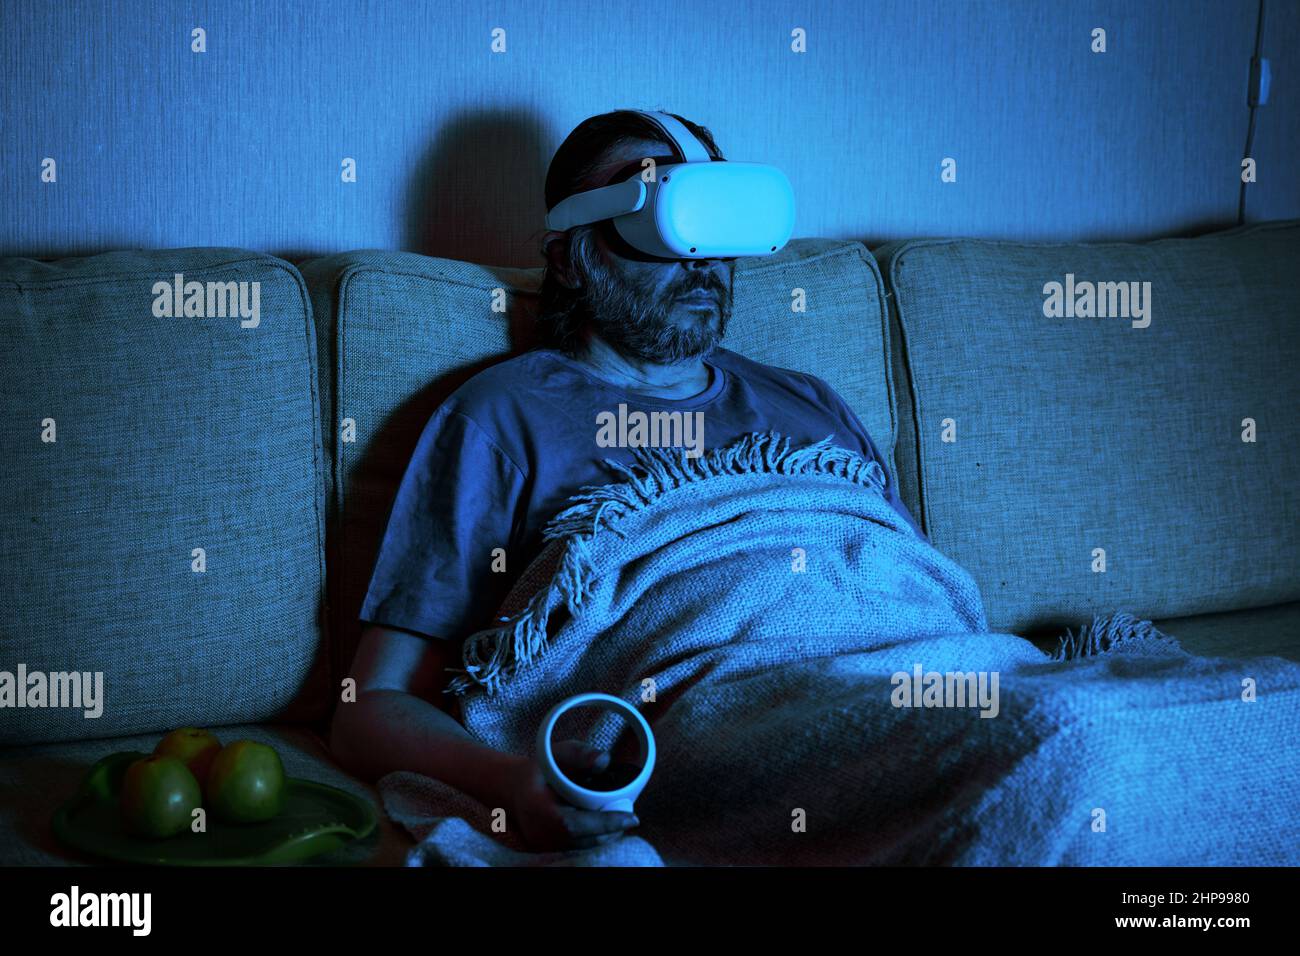 El hombre que usa el auricular de realidad virtual ve la televisión o la  película en la oscuridad, la persona sentada en el sofá mira en las gafas VR.  Concepto de juegos